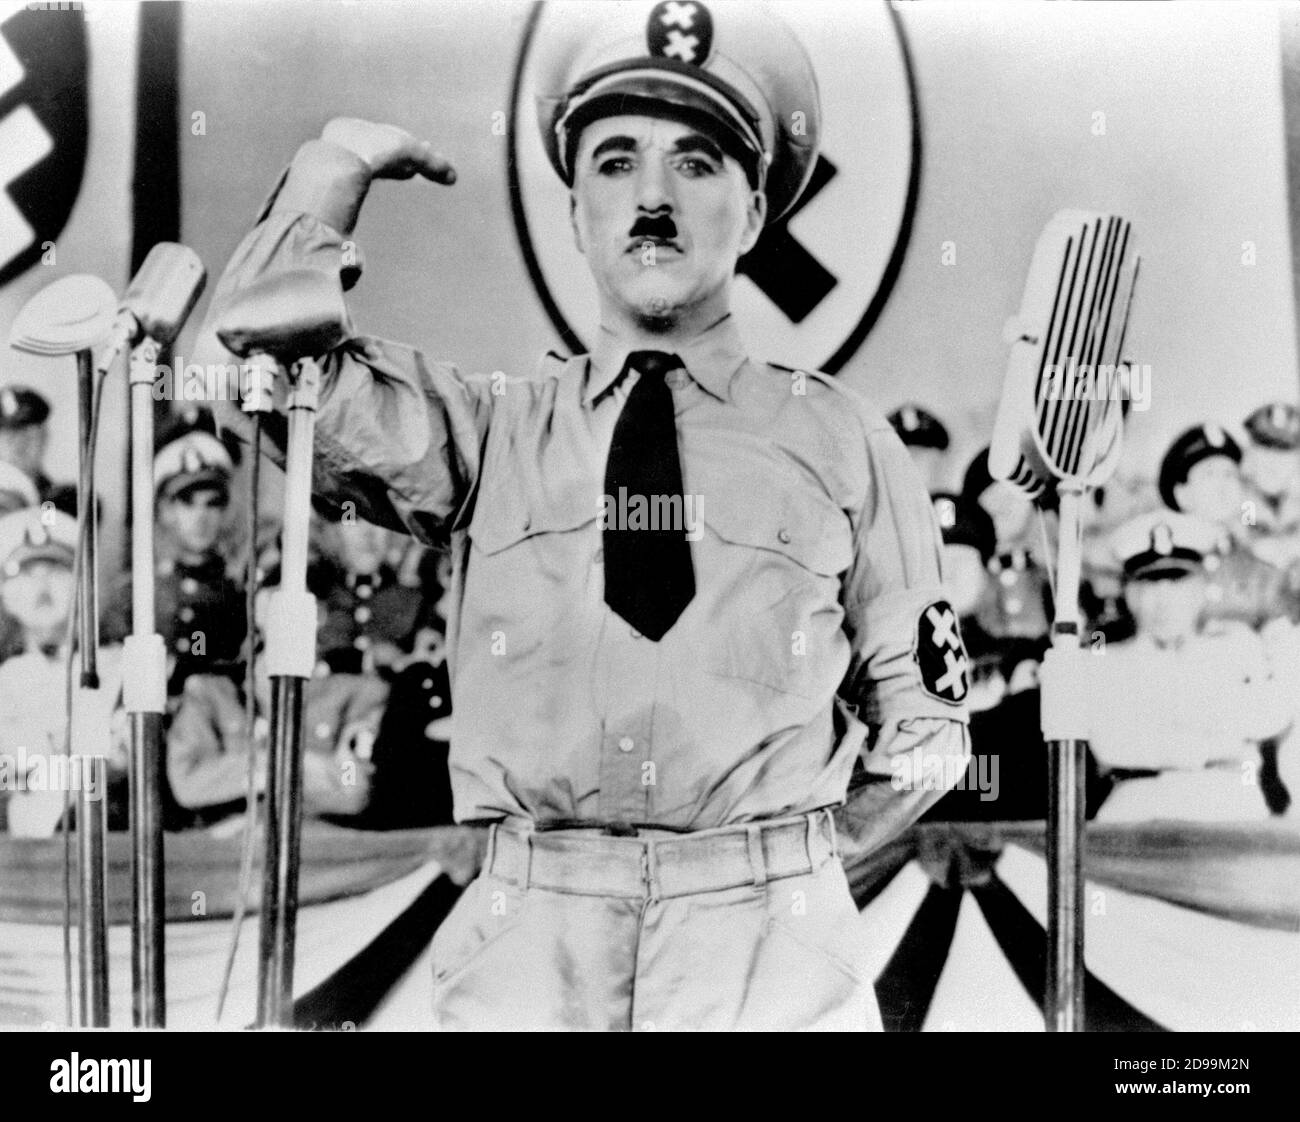 CHARLES  CHAPLIN  ( 1889 - 1977 ) as a HITLER look-a-like in THE GREAT DICTATOR ( 1940 - Il grande dittatore ) - military uniform - uniforme militare - cravatta - tie - WWII - Seconda guerra mondiale - baffi - moustache - nazi - nazist - nazism - nazista - nazismo - sosia - microfono - microphone  ----  Archivio GBB Stock Photo